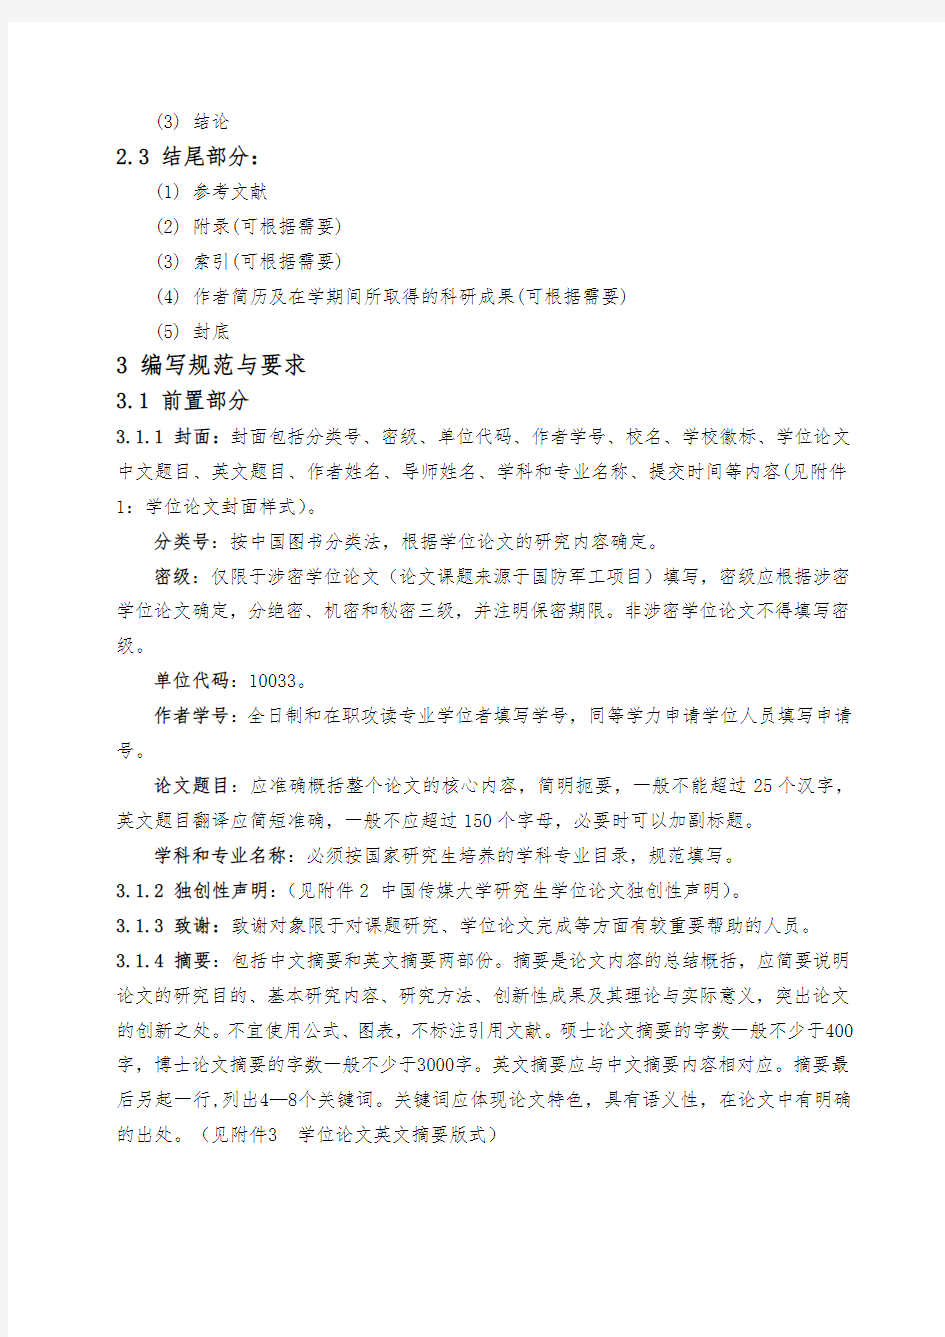 中国传媒大学研究生学位论文编写规则-中国传媒大学研究生院